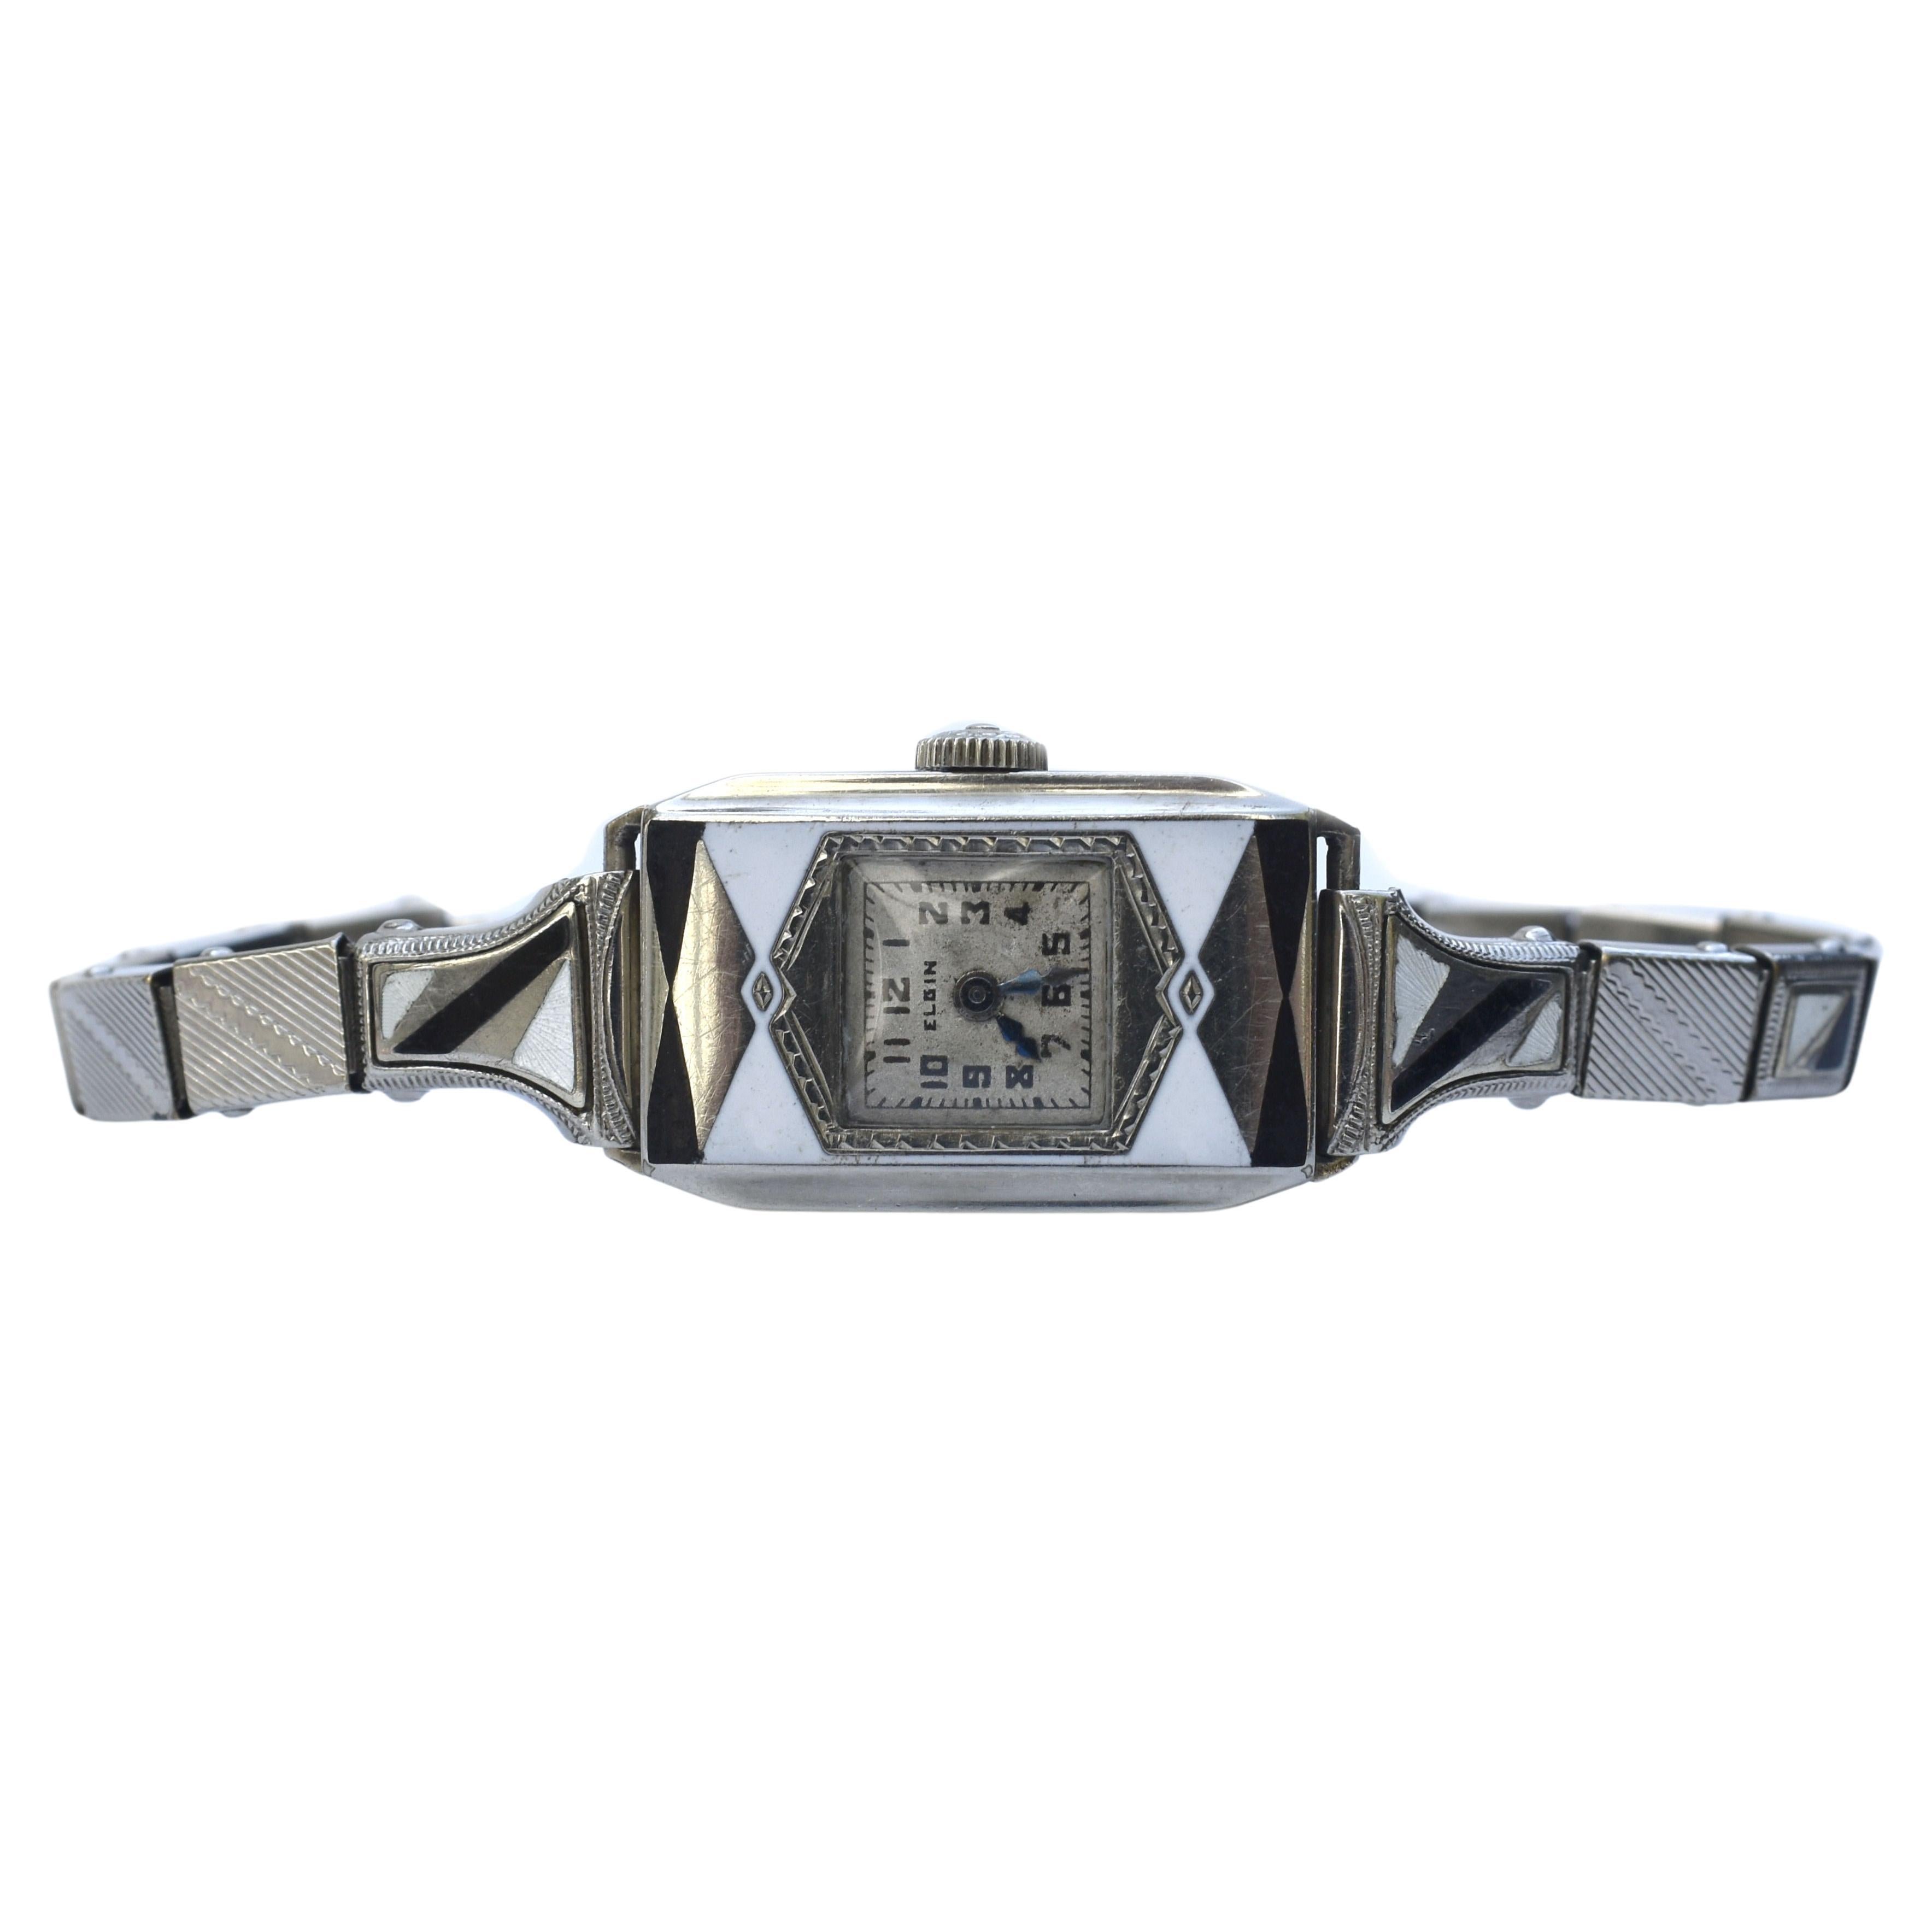 Für Ihre Betrachtung ist diese schöne Art Deco Damen Armbanduhr, die sowohl für Abend-und Tageskleidung sieht großartig. Hergestellt von der US-Uhrmacherfirma Elgin mit Seriennummer aus dem Jahr 1933, 89 Jahre alt! Das Uhrwerk ist ein 15-steiniges